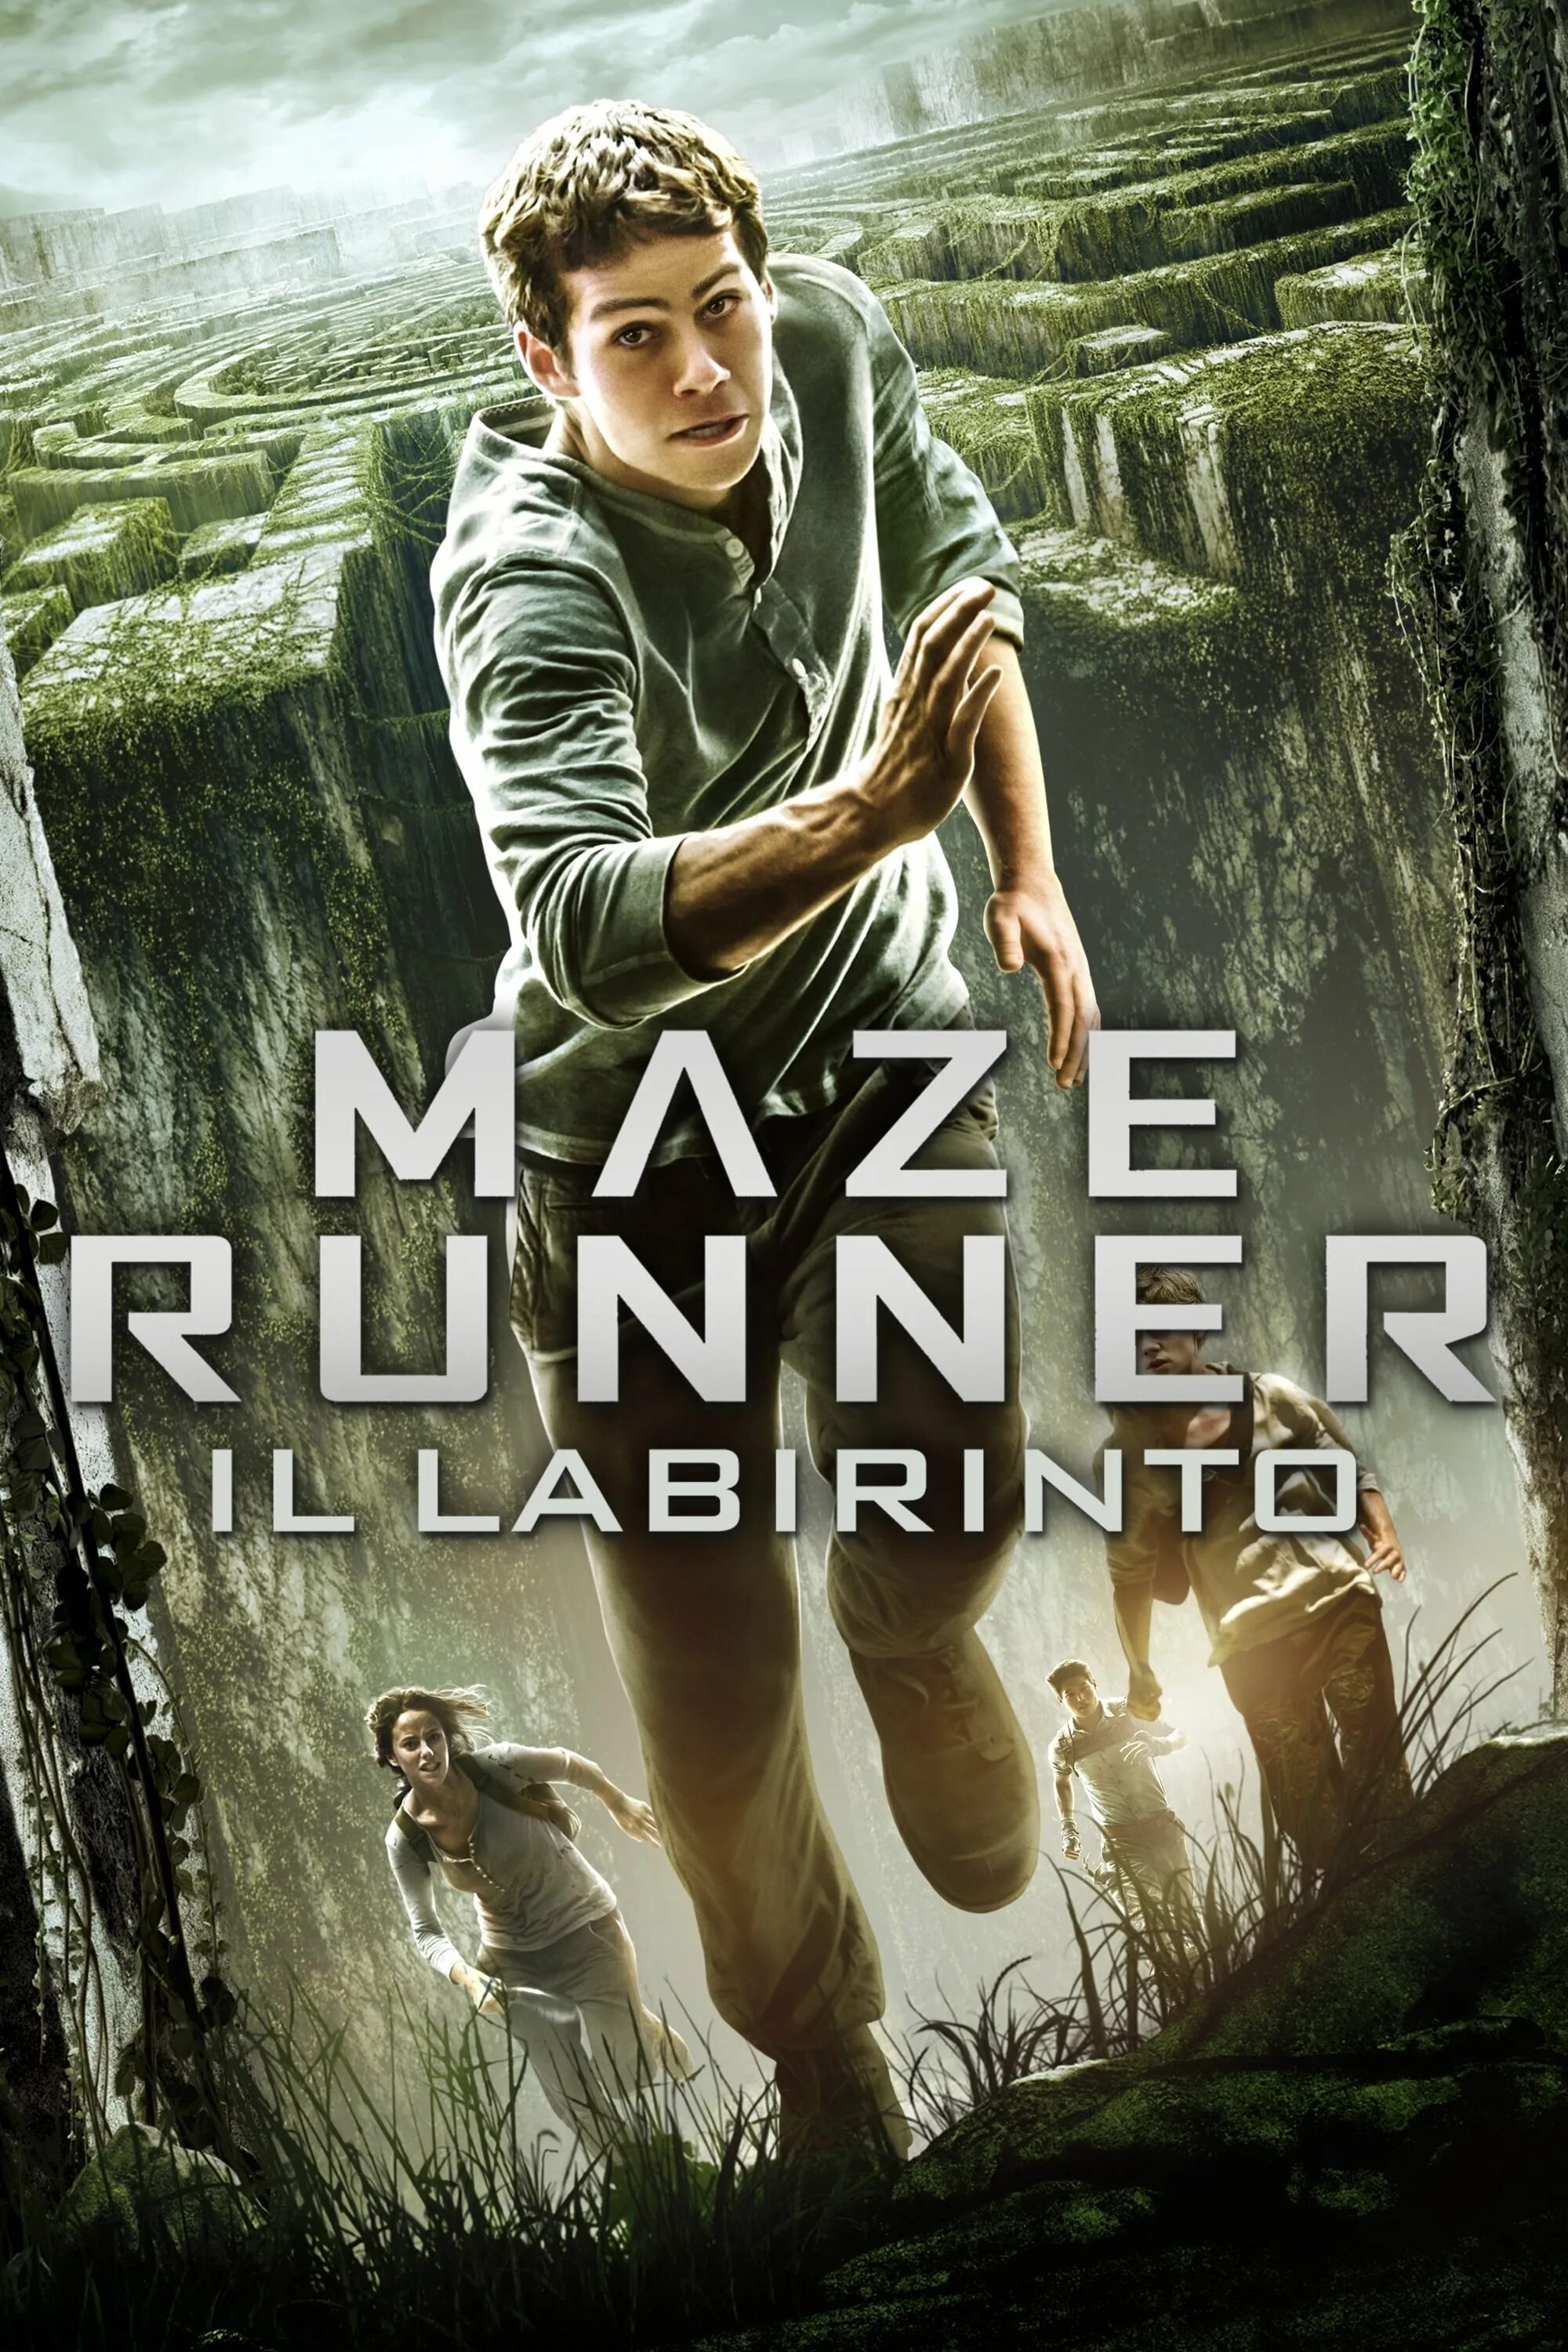 Сбежать на английском. The Maze Runner (2014) Постер. Бегущий в лабиринте 2014 Постер. Бегущий в лабиринте 1.